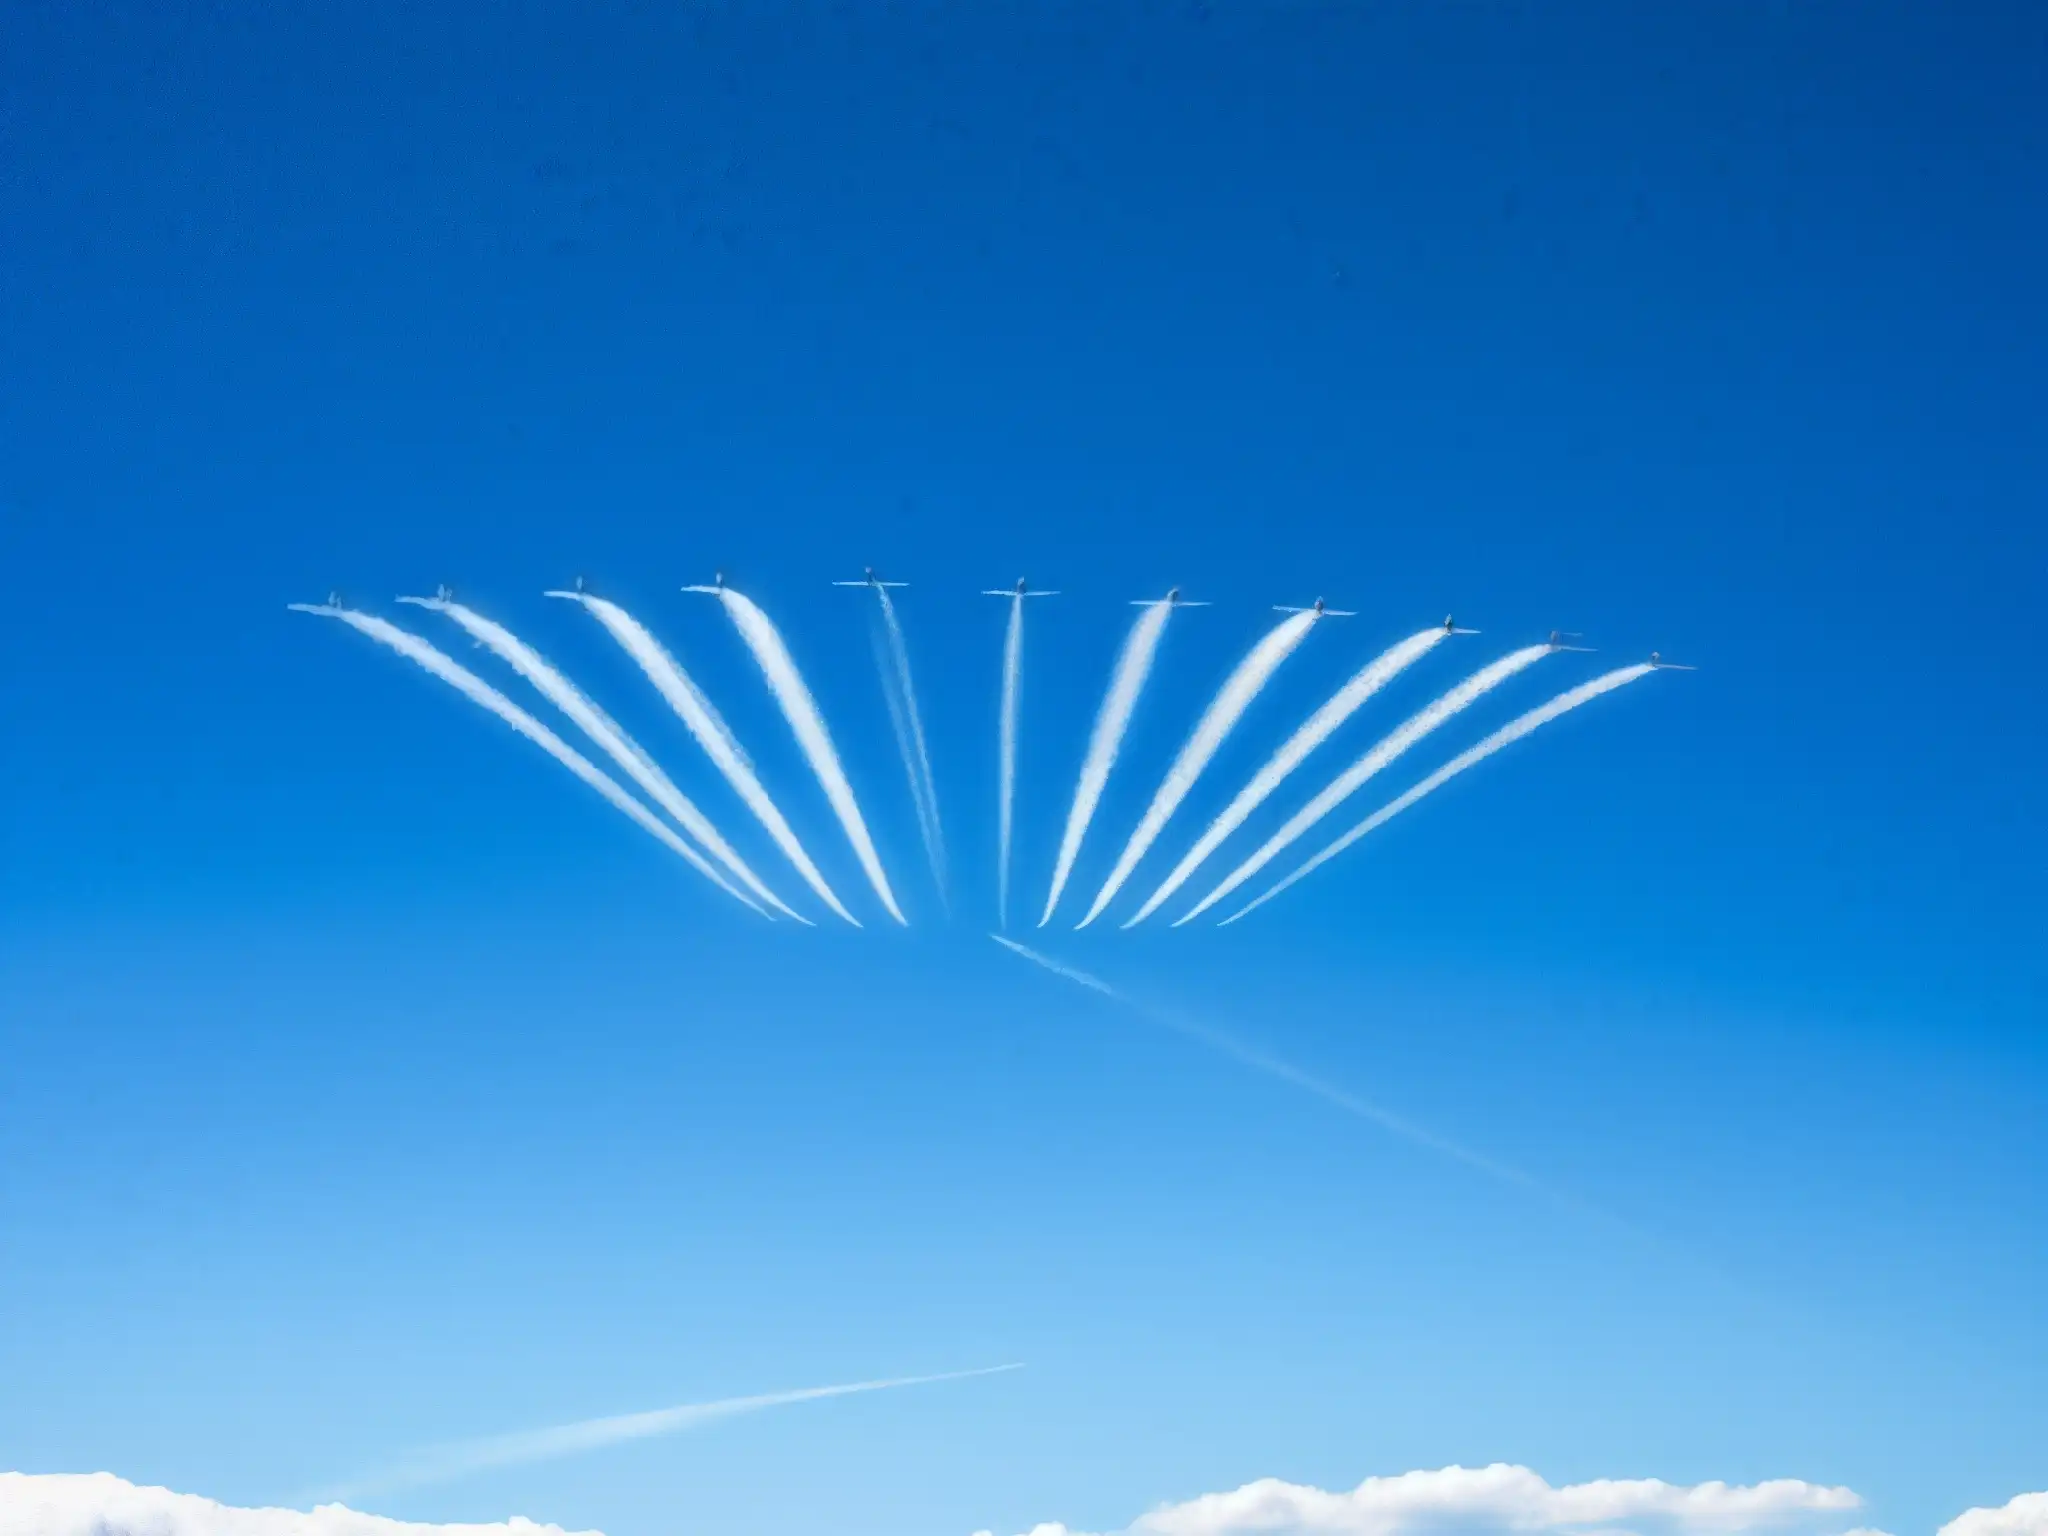 Vapor de avión cruza el cielo azul, desencadenando mitos y leyendas urbanas sobre chemtrails análisis